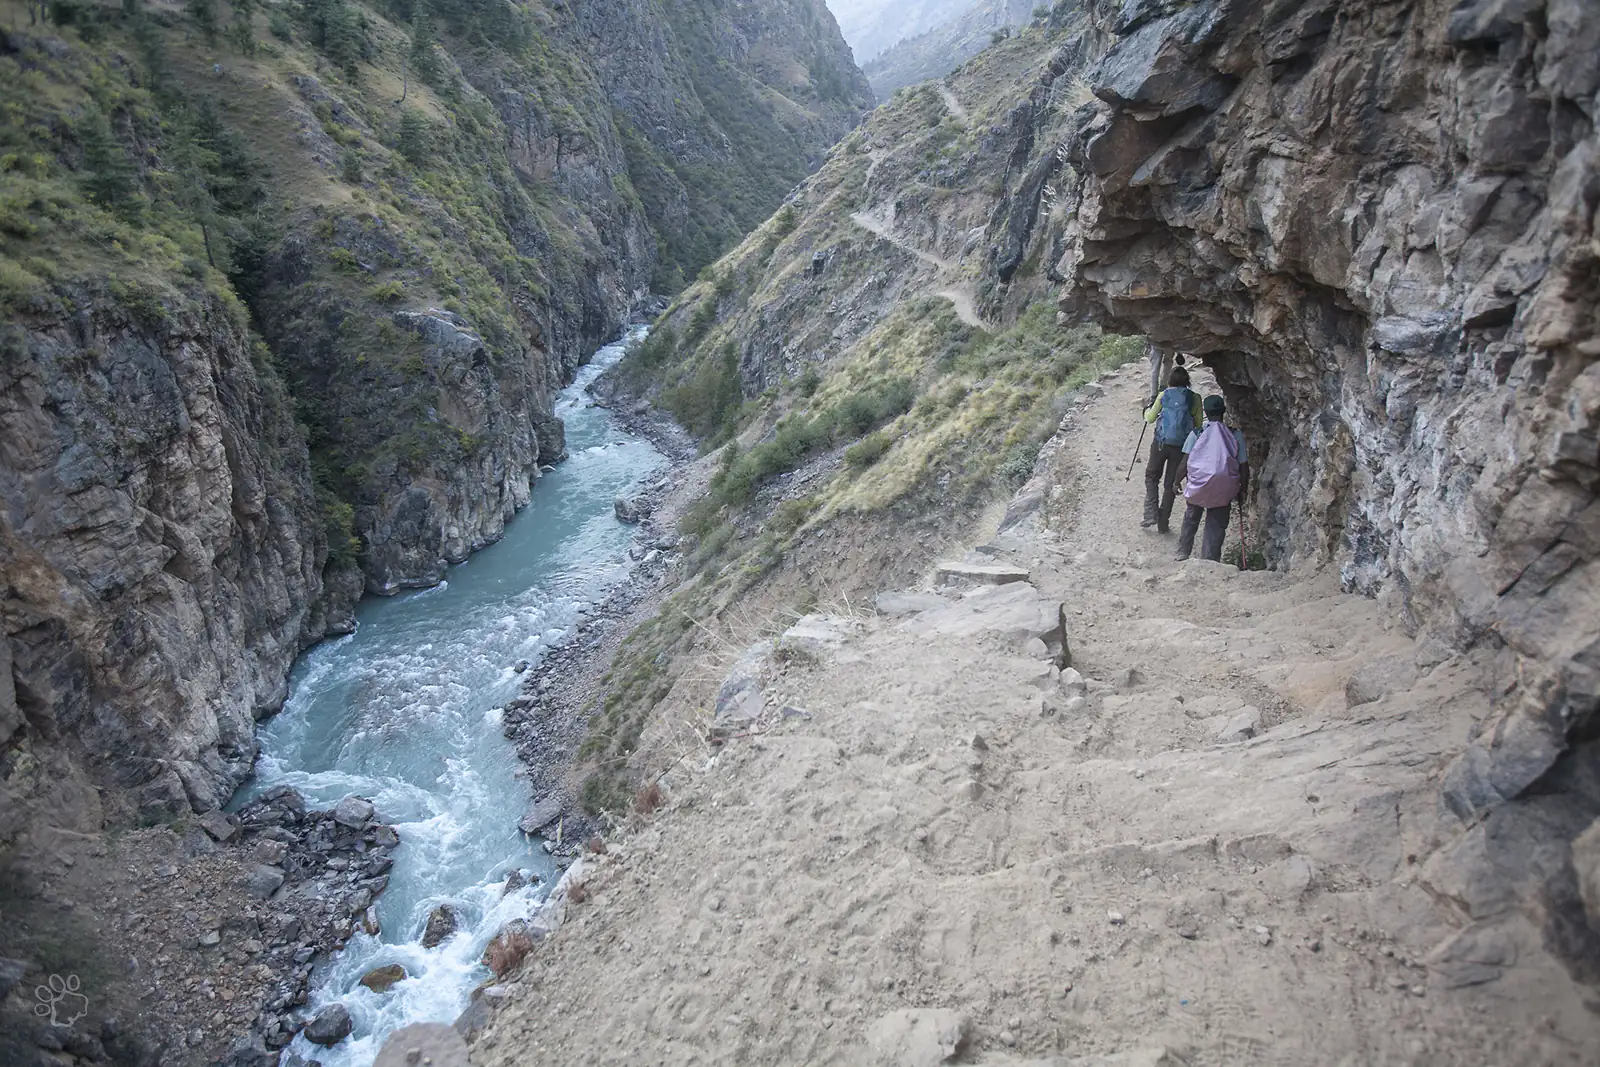 Trail along the Karnali River